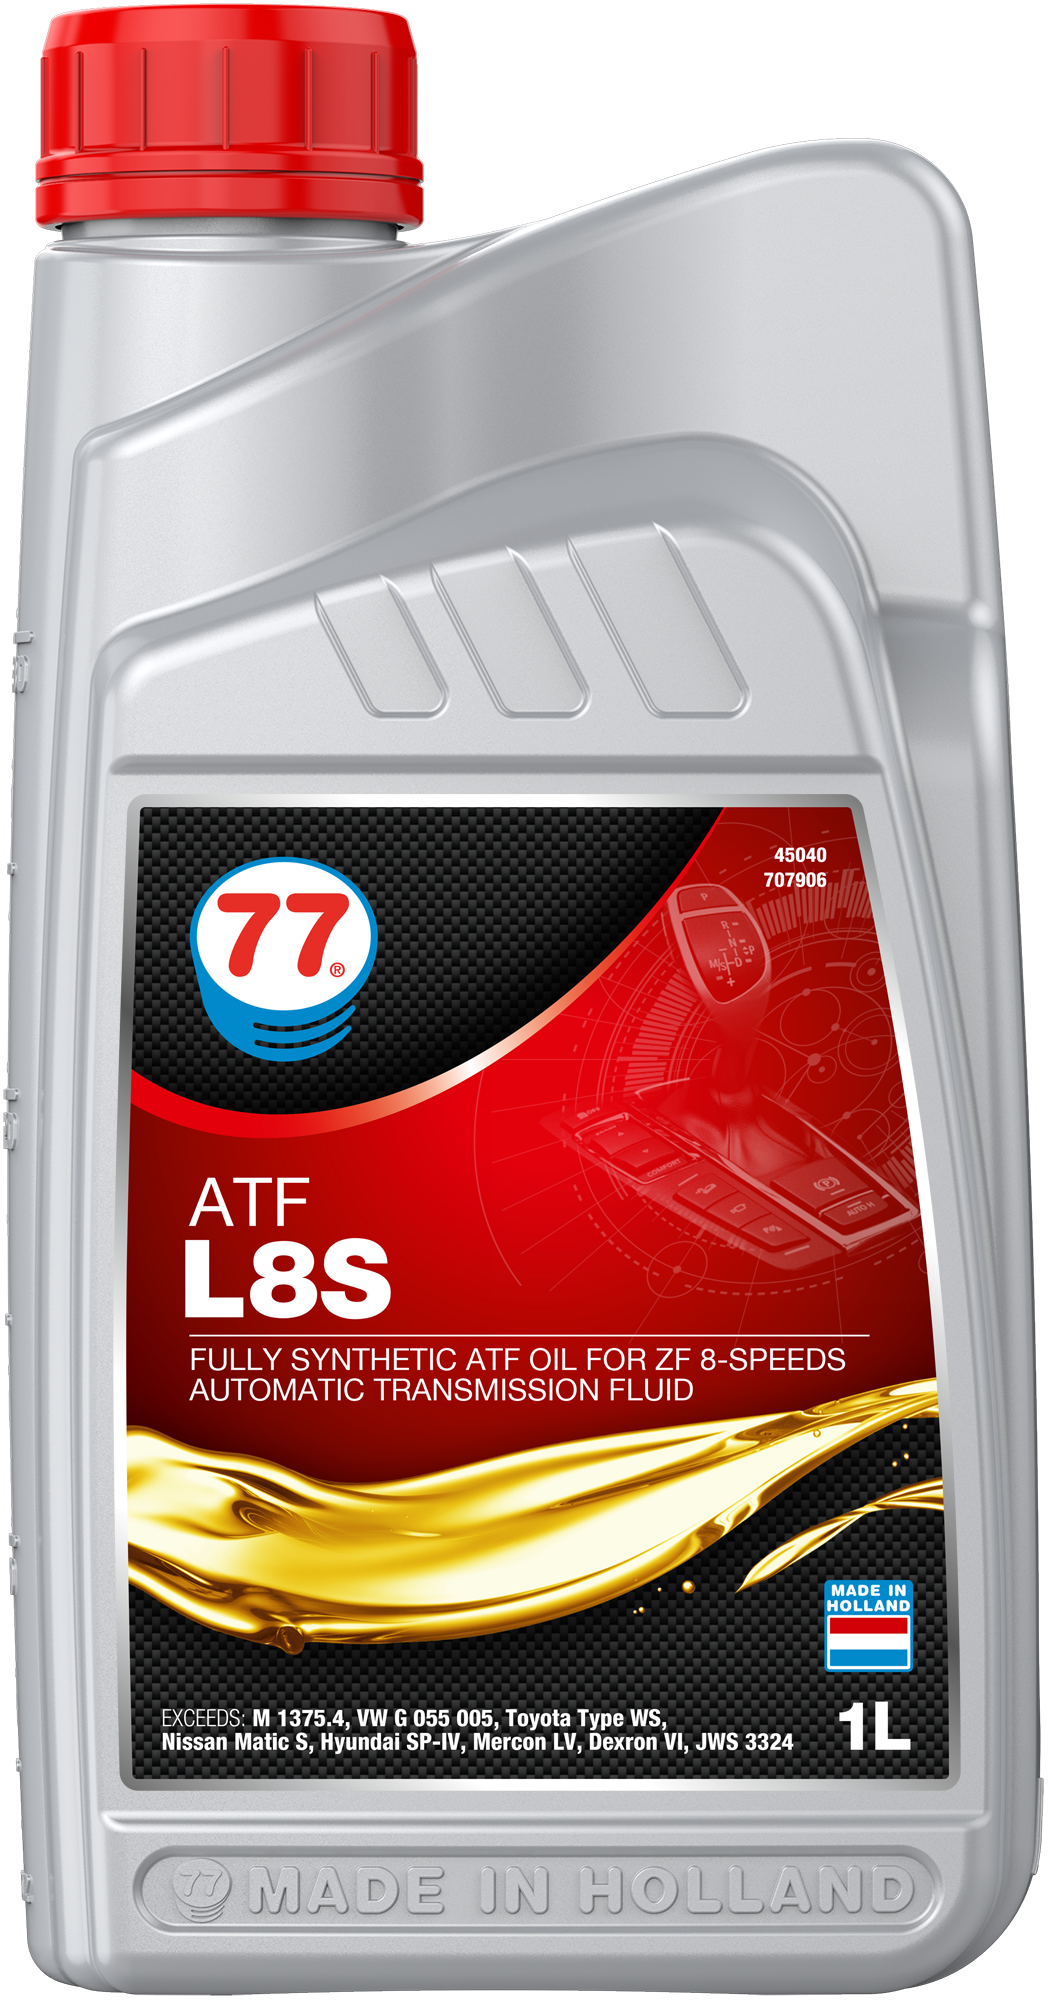 OUT0151-4504-1D2017 ATF L8S is een synthetische hoge kwaliteit zware olie uitsluitend bestemd voor ZF 6-speed en 8-speed automatische auto transmissies.